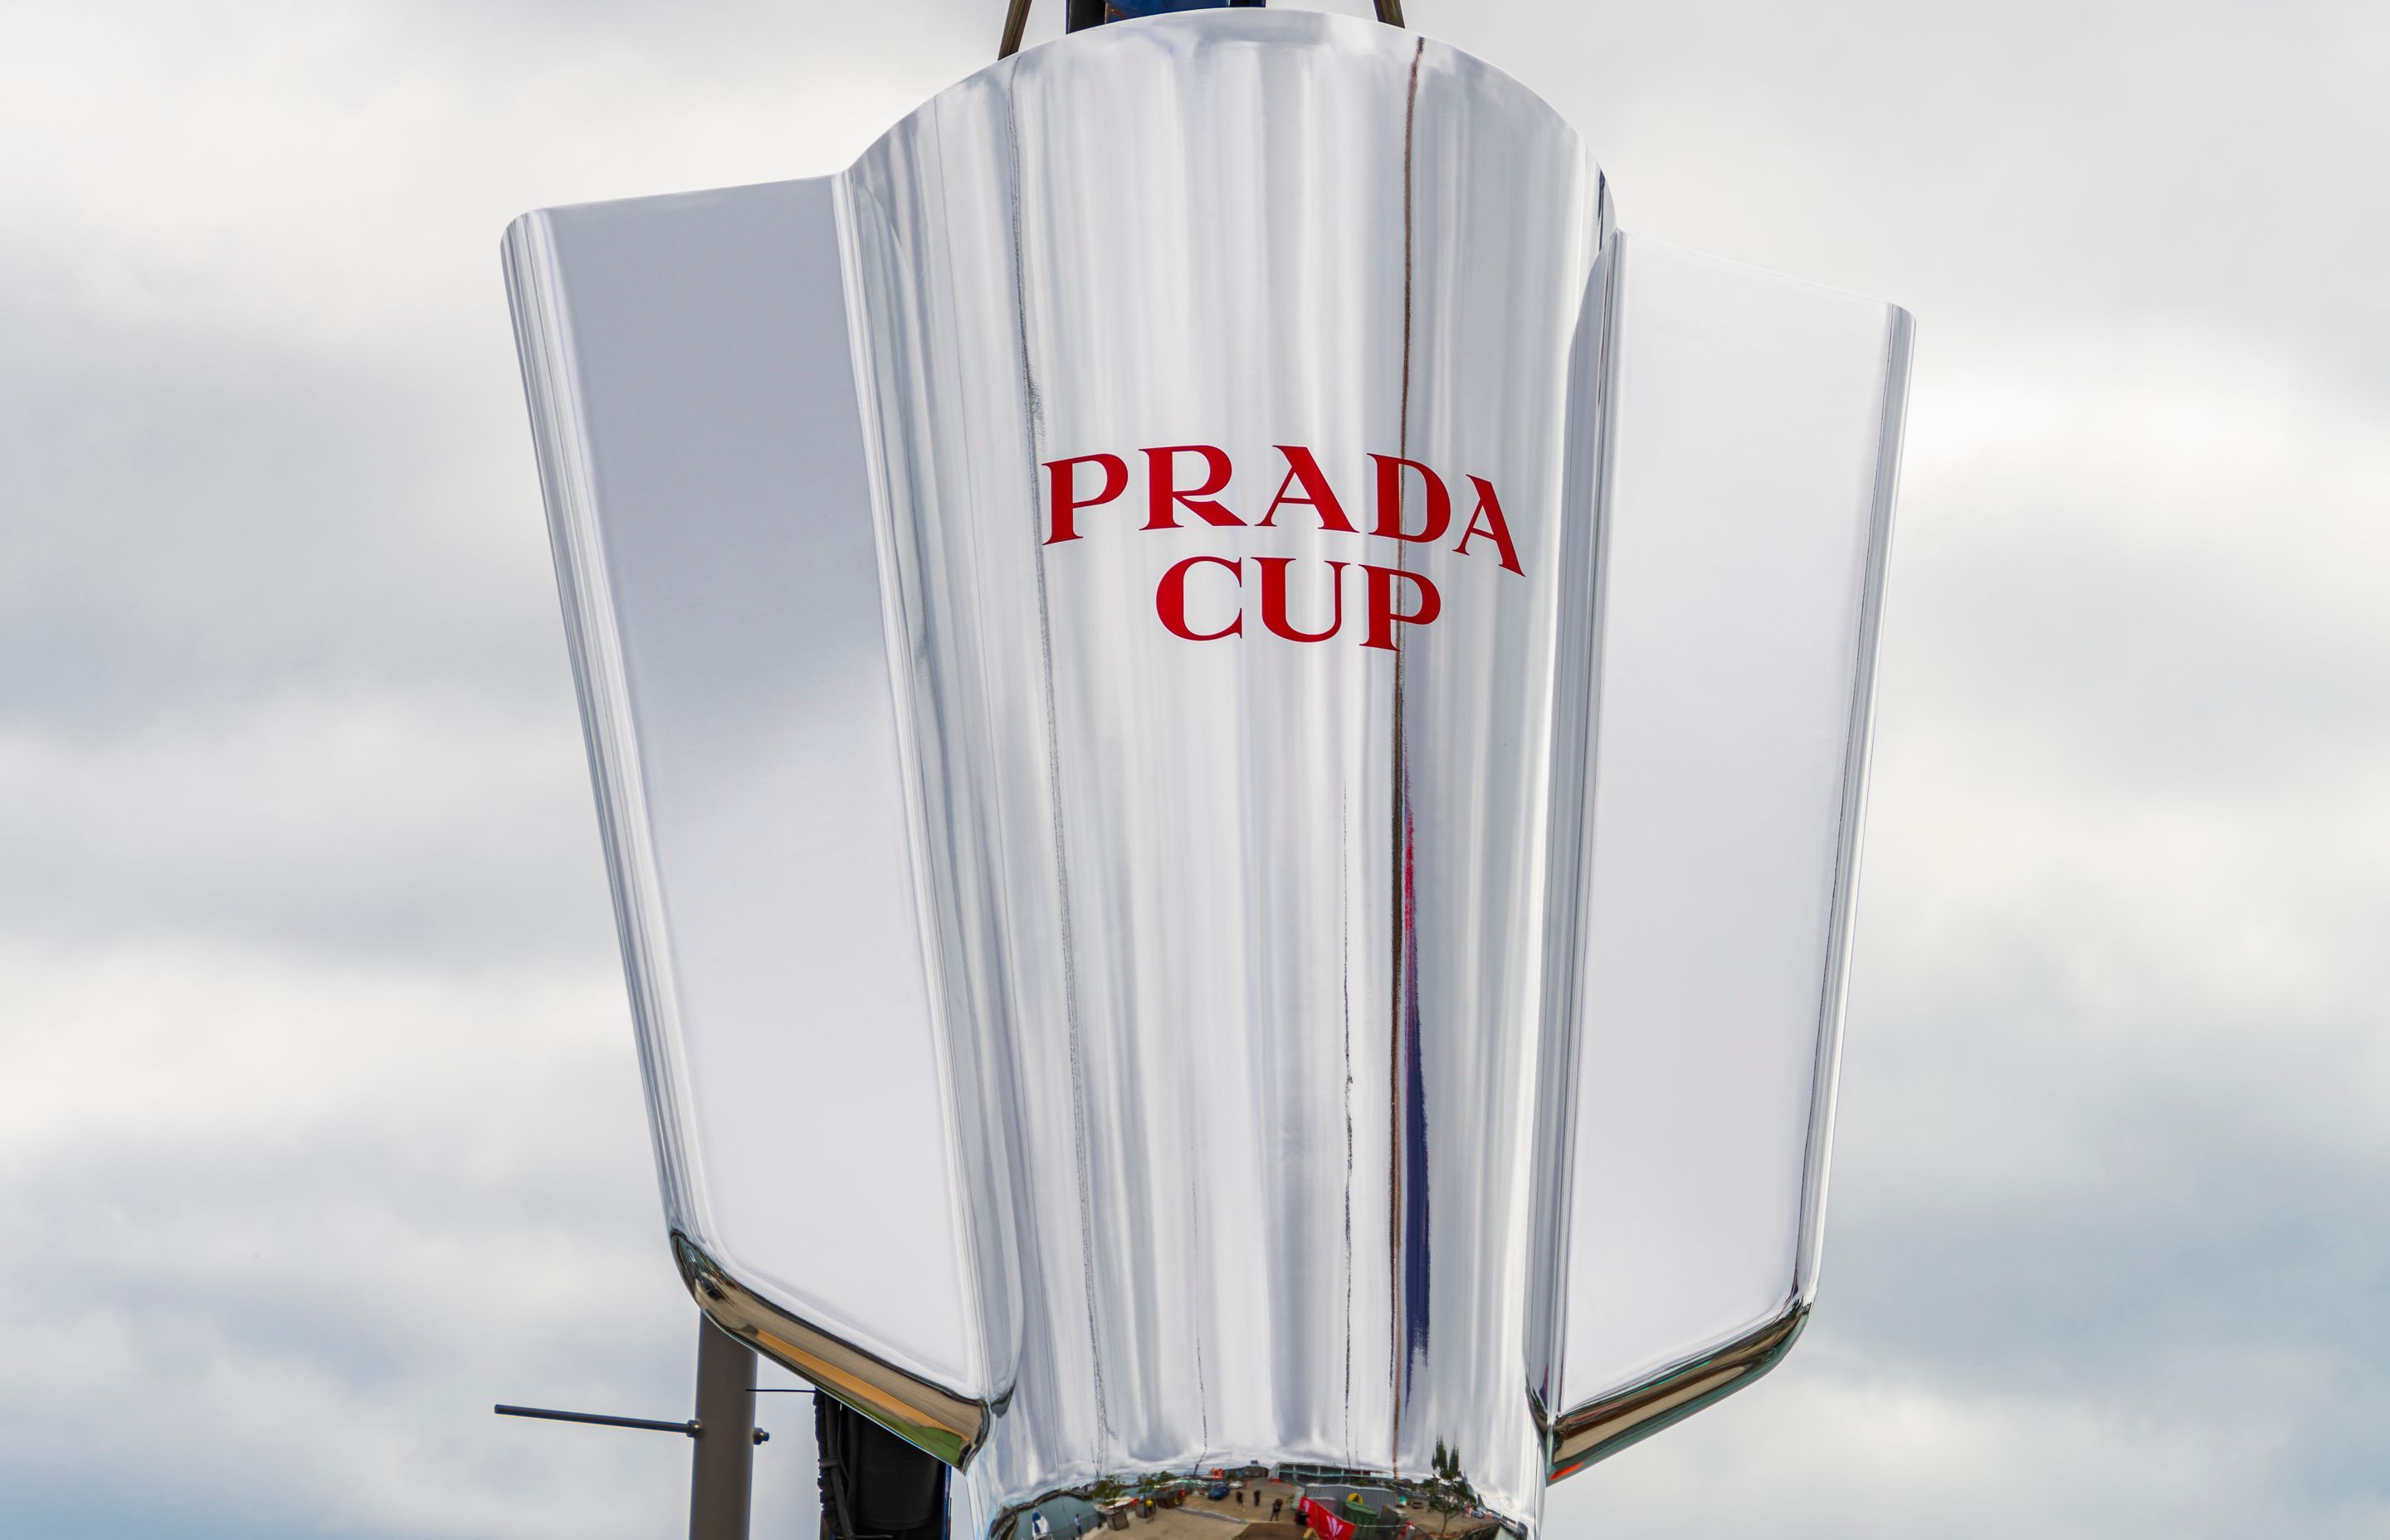 Prada Cup replica